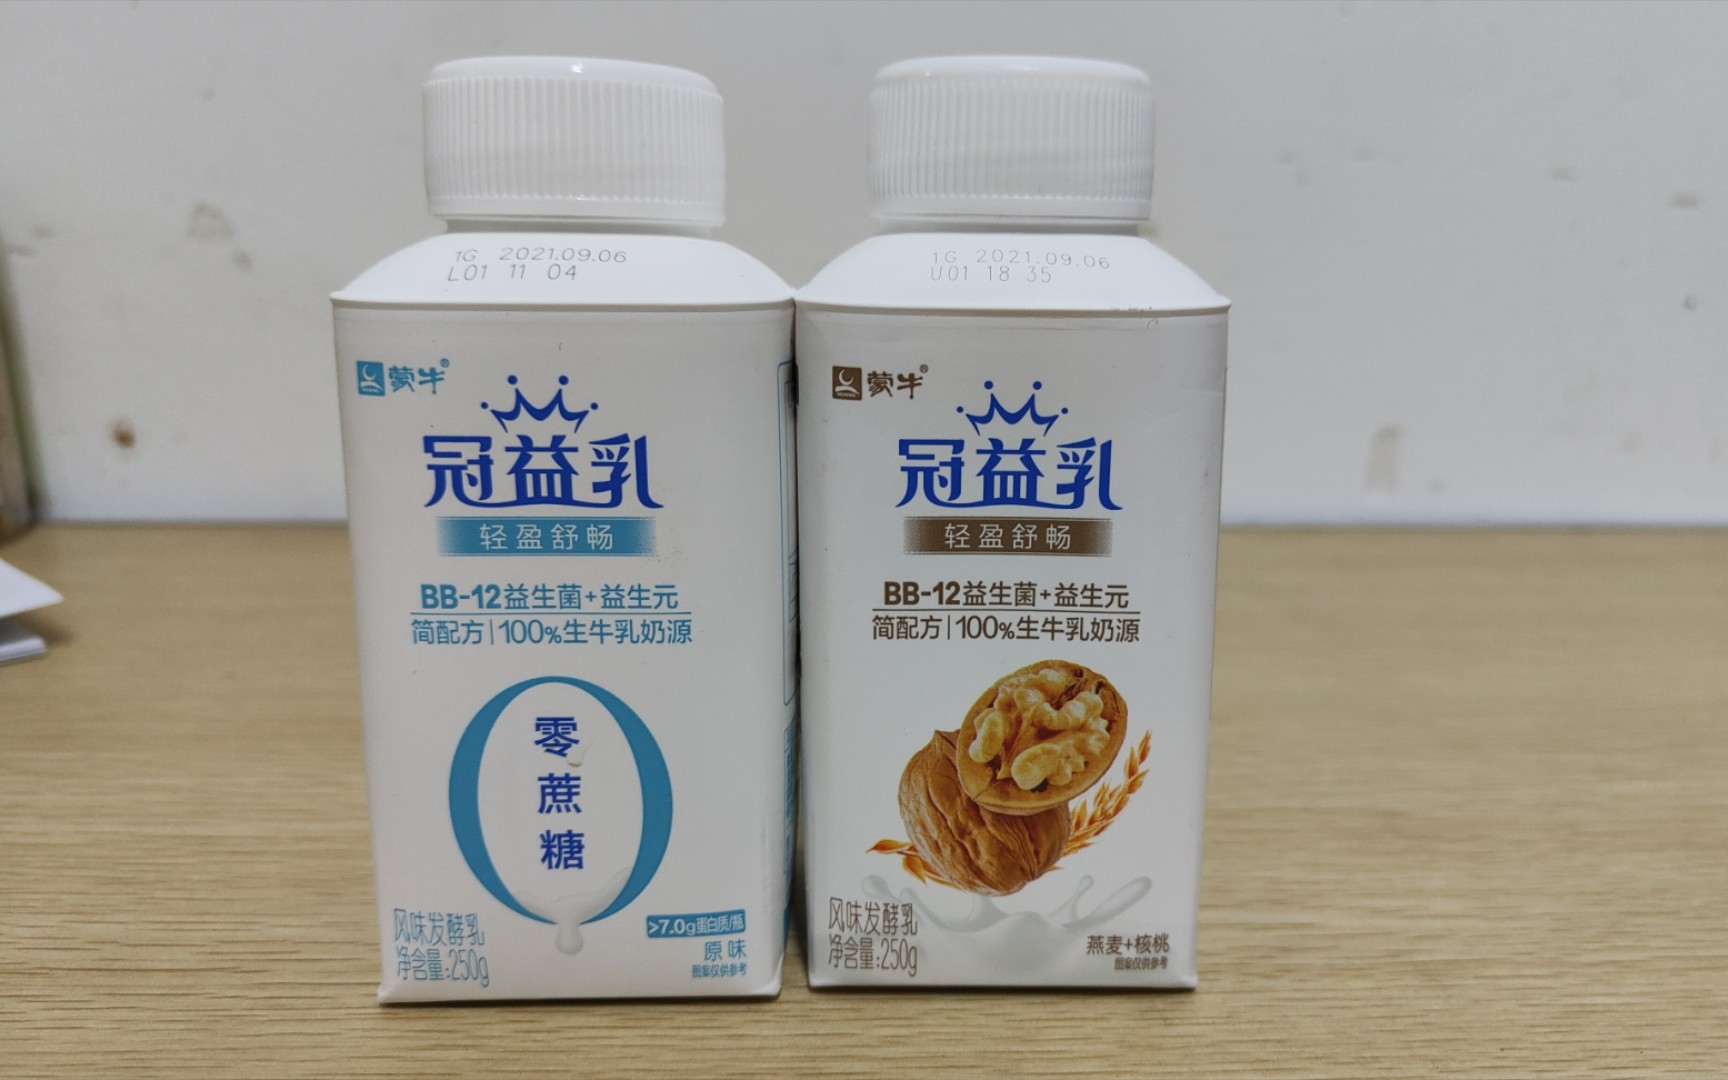 蒙牛 风味酸牛奶(原味)的营养价值，蒙牛 风味酸牛奶(原味)营养 - 食物库